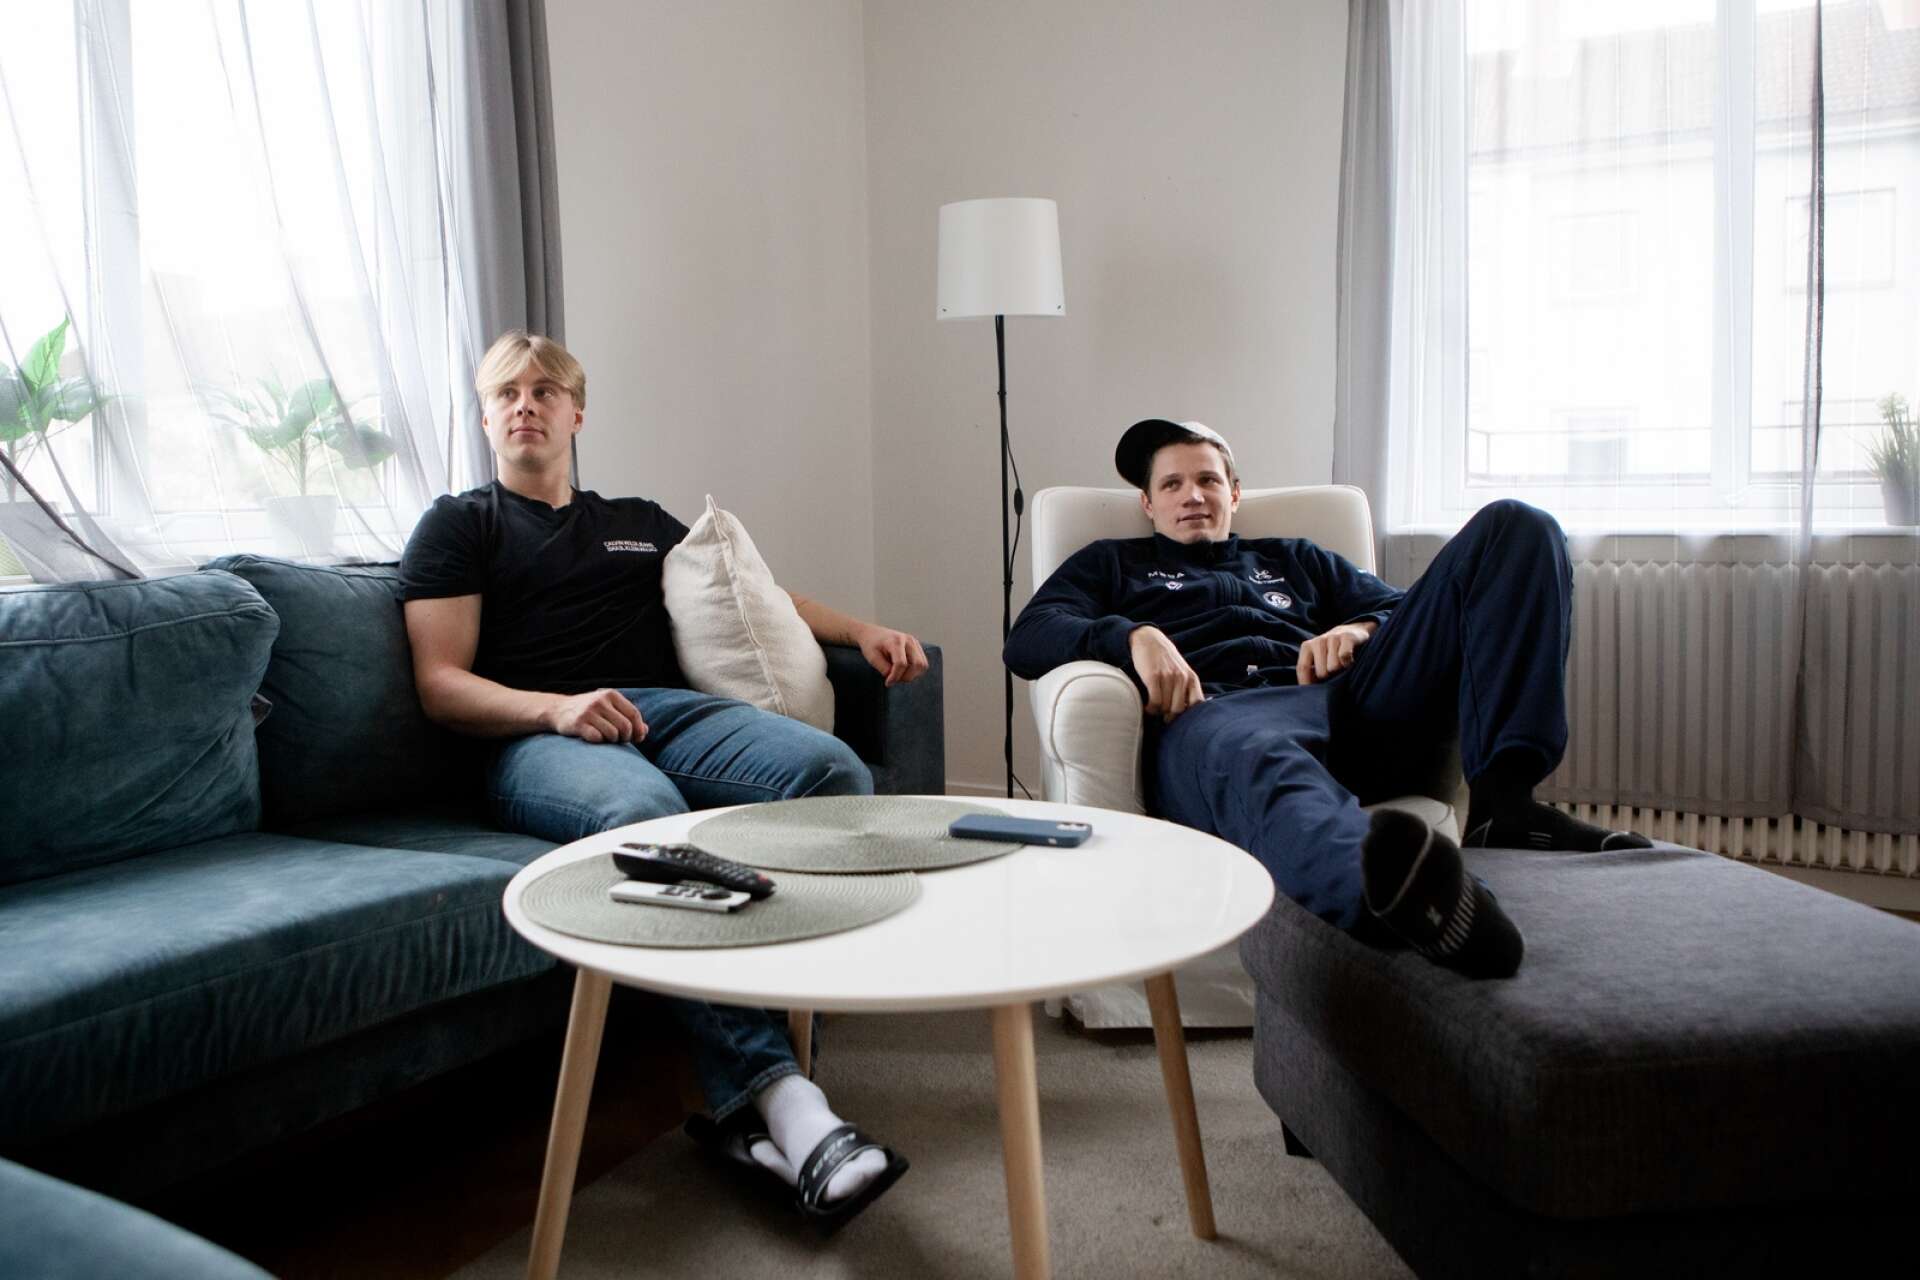 Simen Andre Edvardsen och Eskild Bakke Olsen i vardagsrummet, där de spenderar mycket tid när de är lediga. Antingen med sport på tv:n eller Fifa, NHL och Fortnite på Playstation.